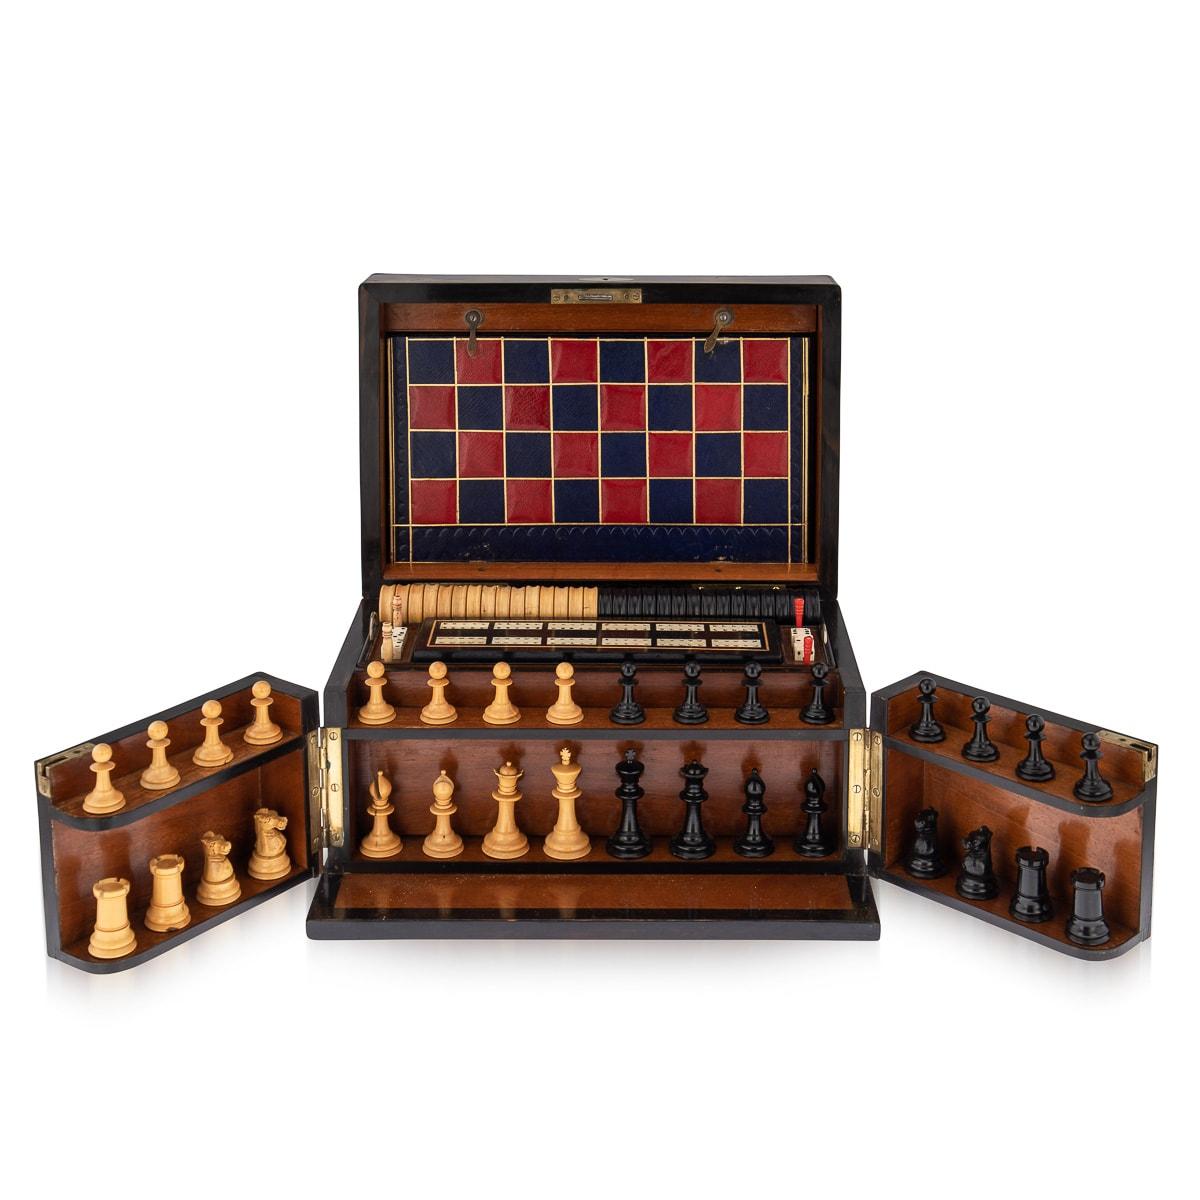 Antique recueil de jeux victorien de la fin du 19e siècle en noyer, l'intérieur comprenant un jeu d'échecs, des dames, des dominos, des dés, une planche de cribbage avec marqueurs, des planches de jeux reliées en cuir, des cartes à jouer, des pions